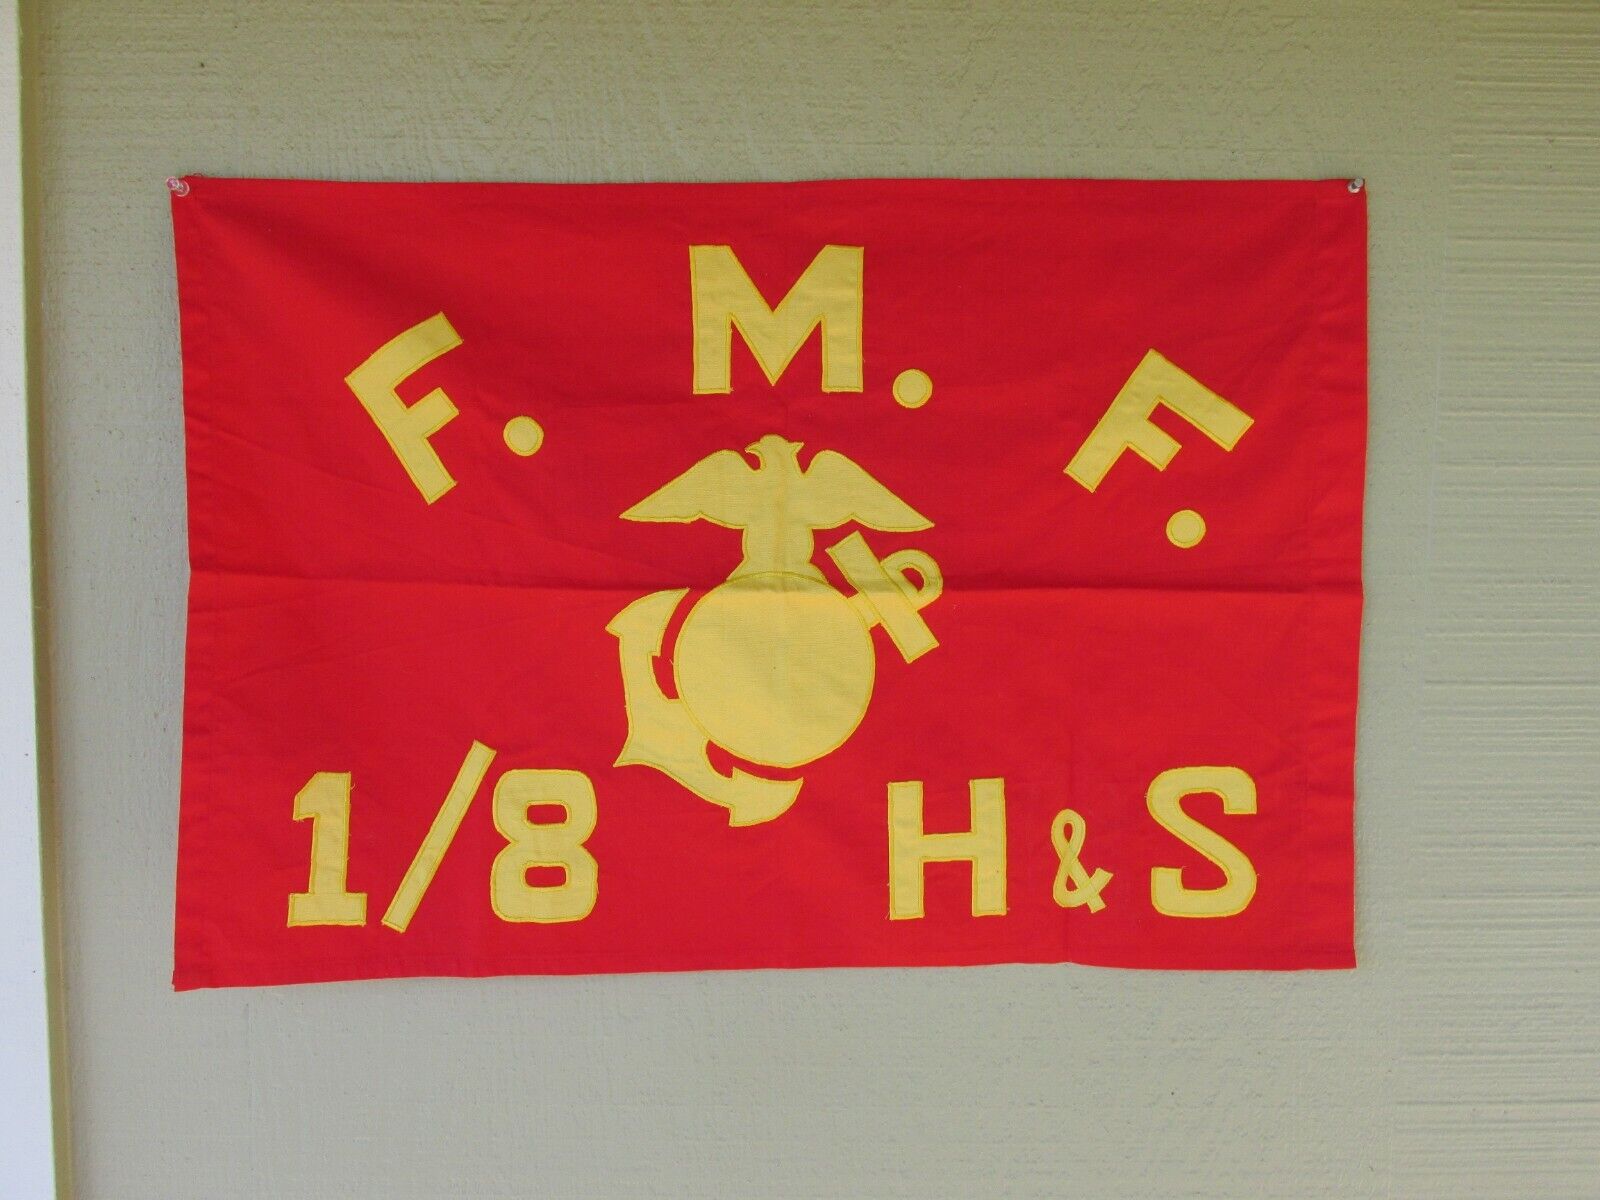 USMC flag Fleet Marine Force 1/8  H & S theater made US Marines FMF